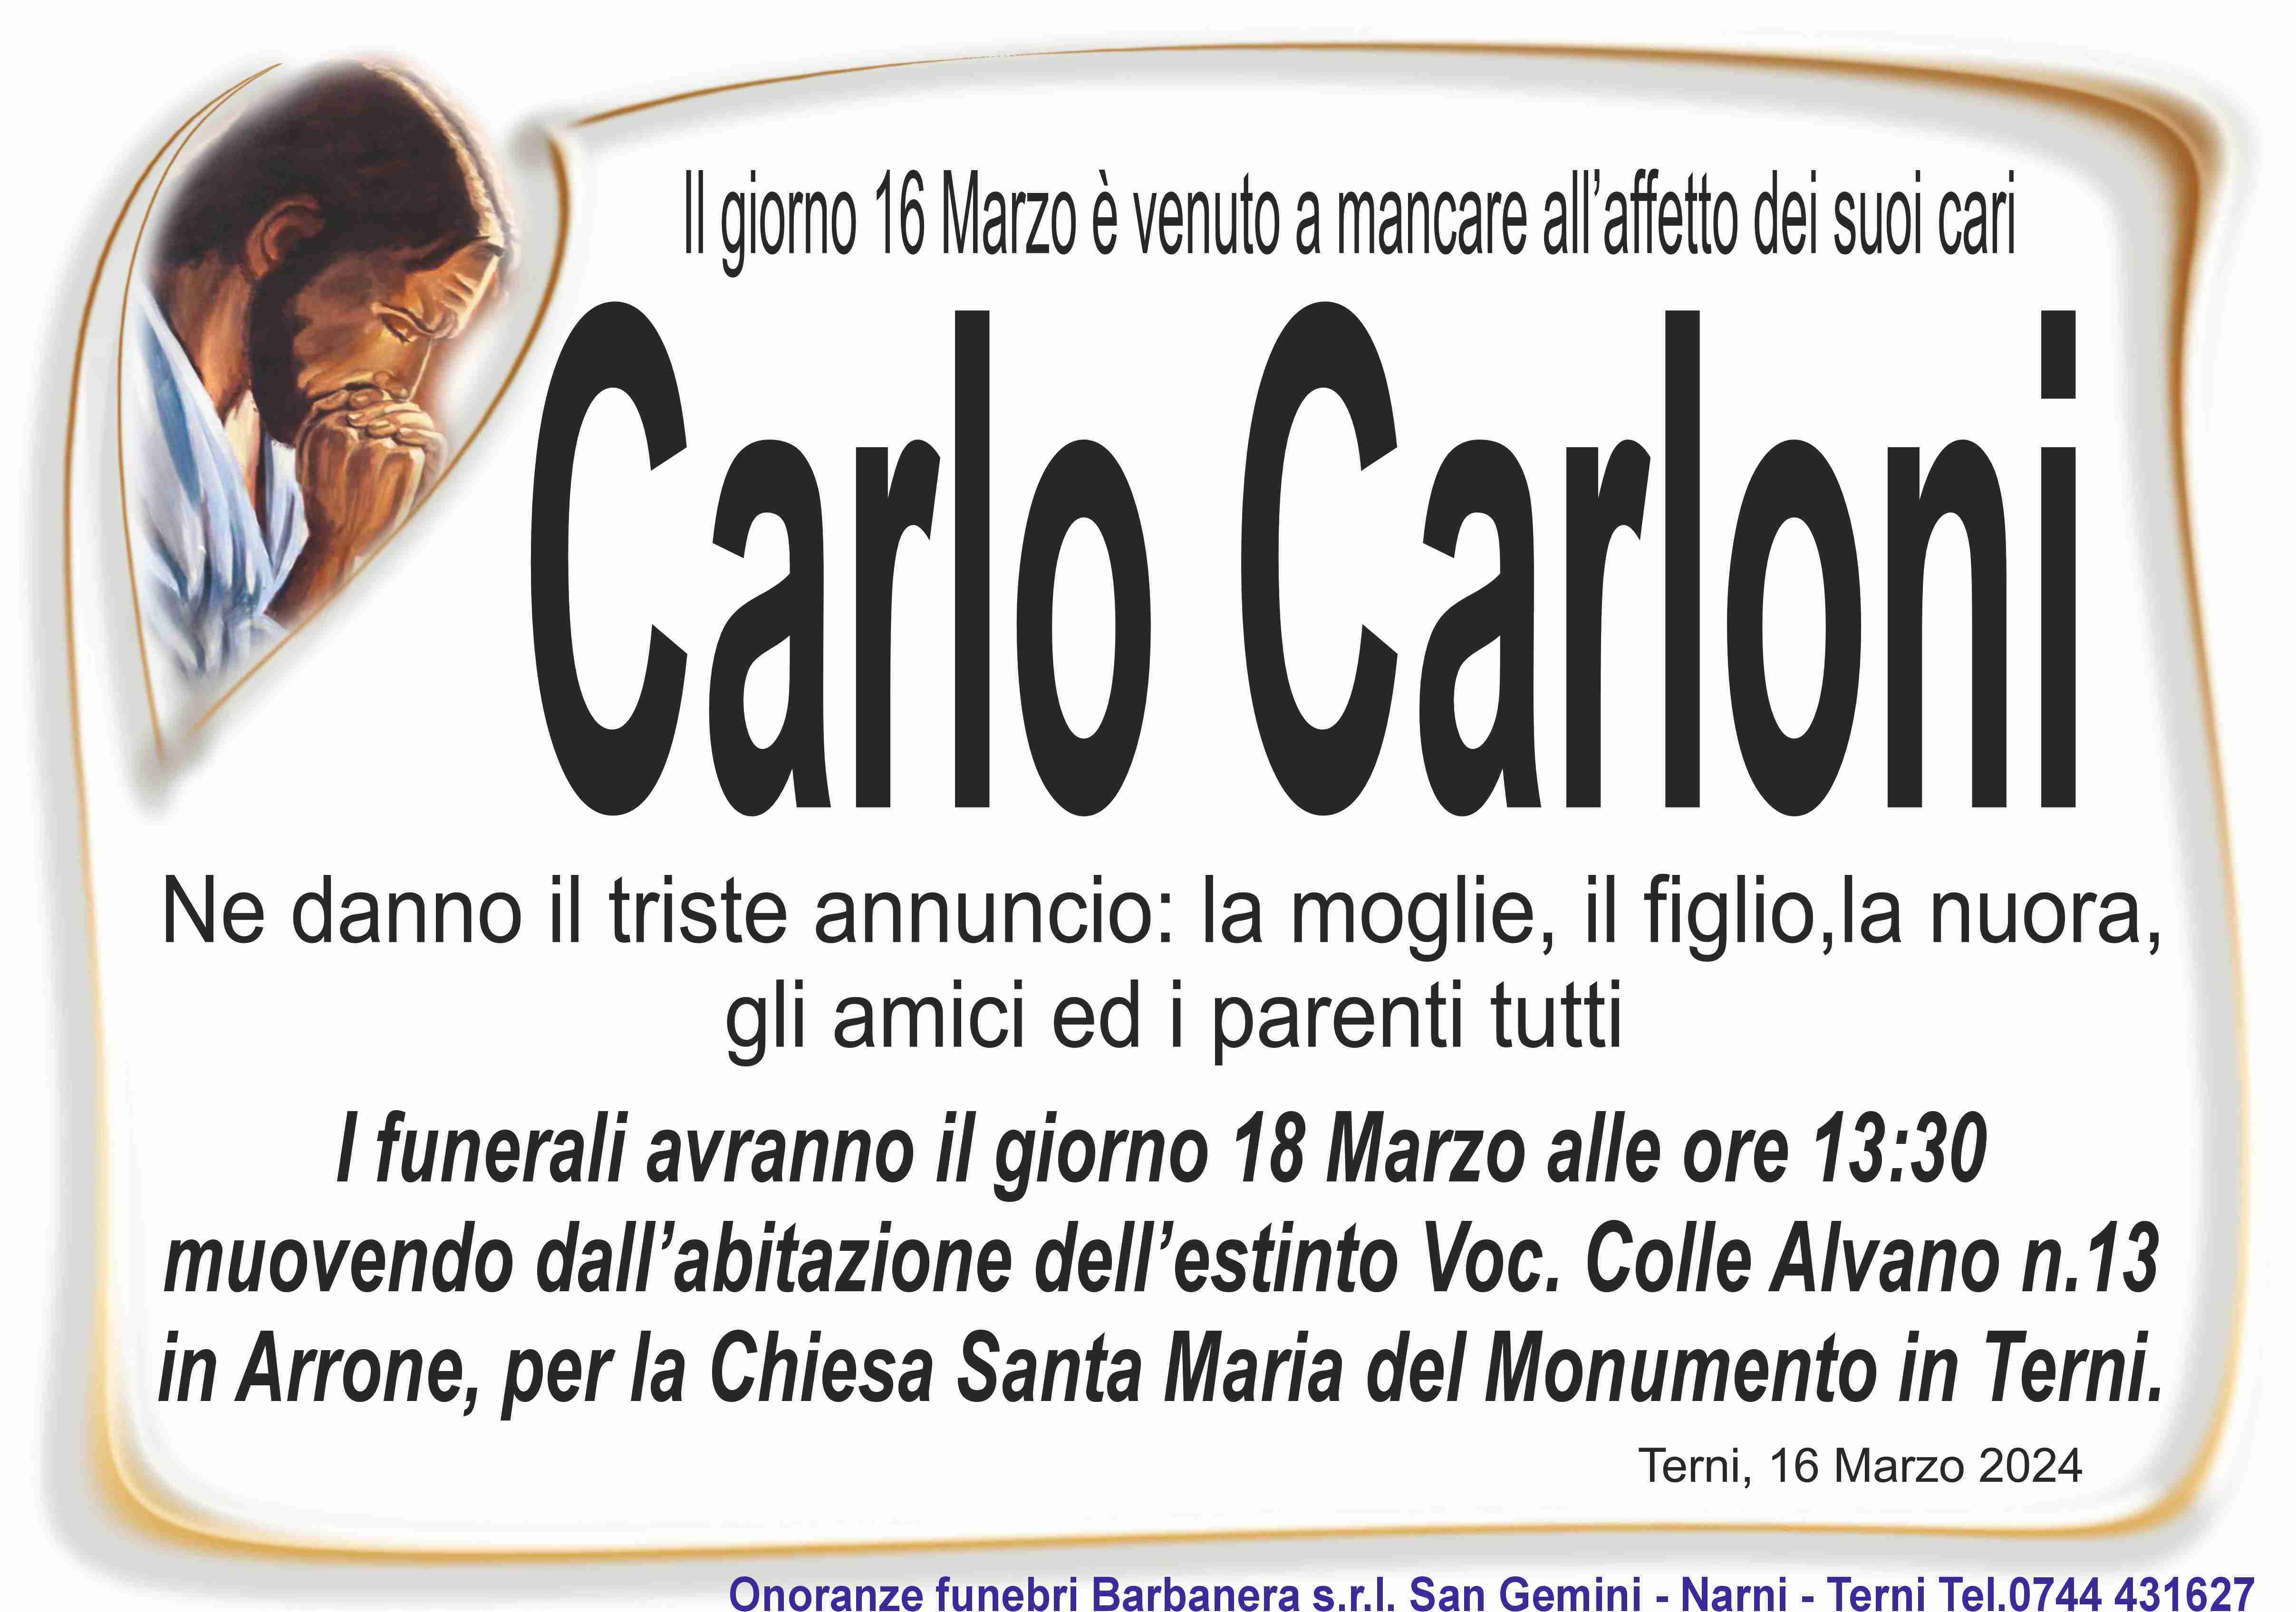 Carloni Carlo